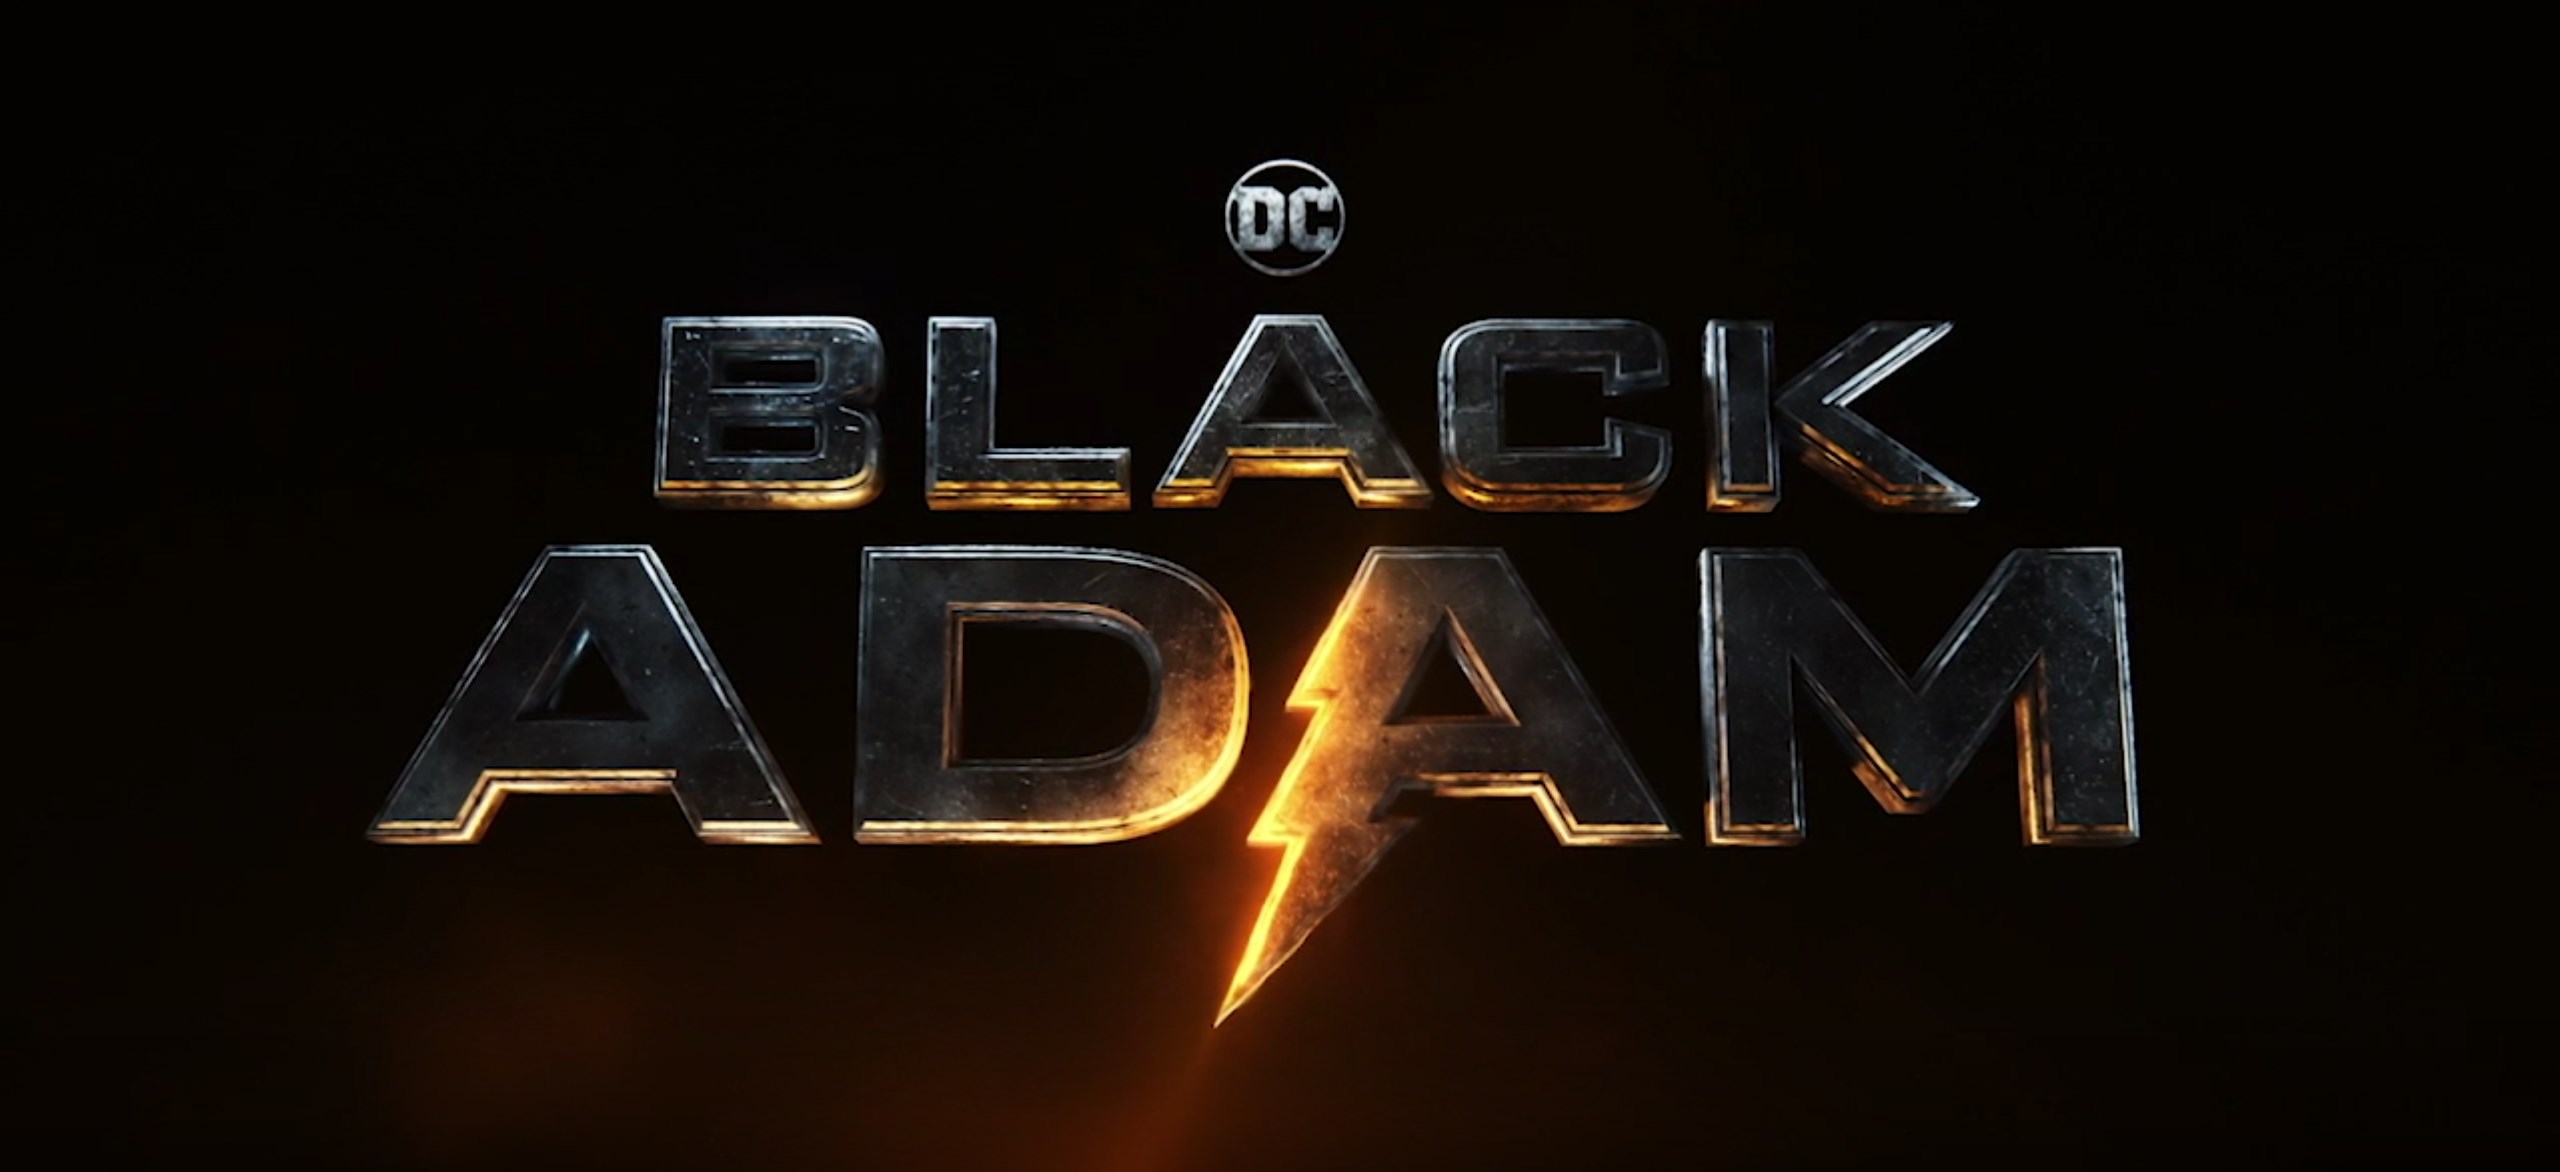 DC filmi Black Adam'dan yeni görseller geldi